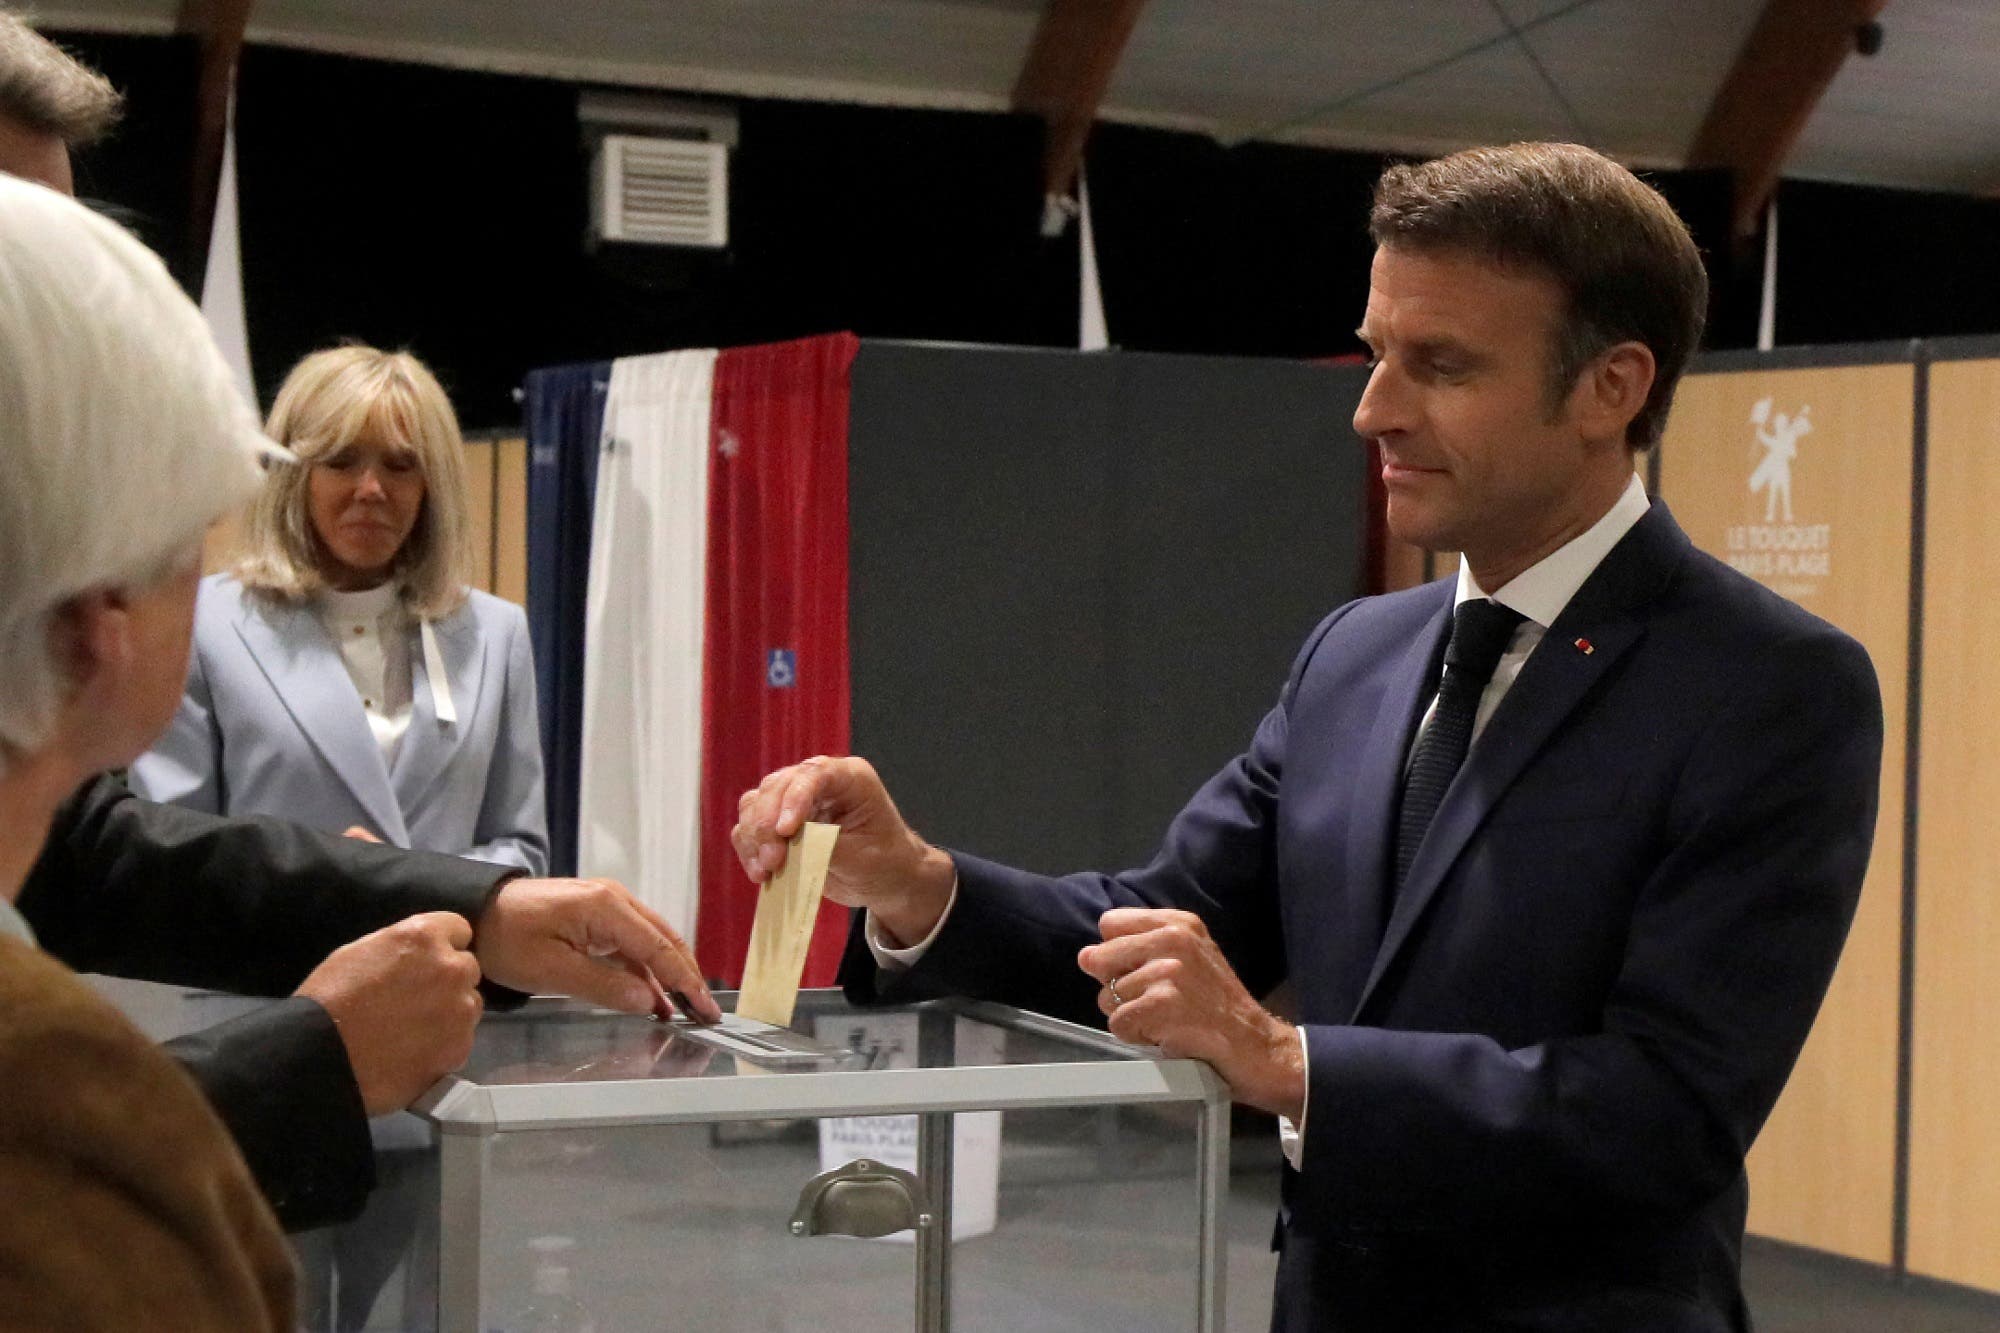 إيمانويل ماكرون يدلي بصوته خلال الجولة الأخيرة من الانتخابات البرلمانية في فرنسا في 19 يونيو (رويترز)